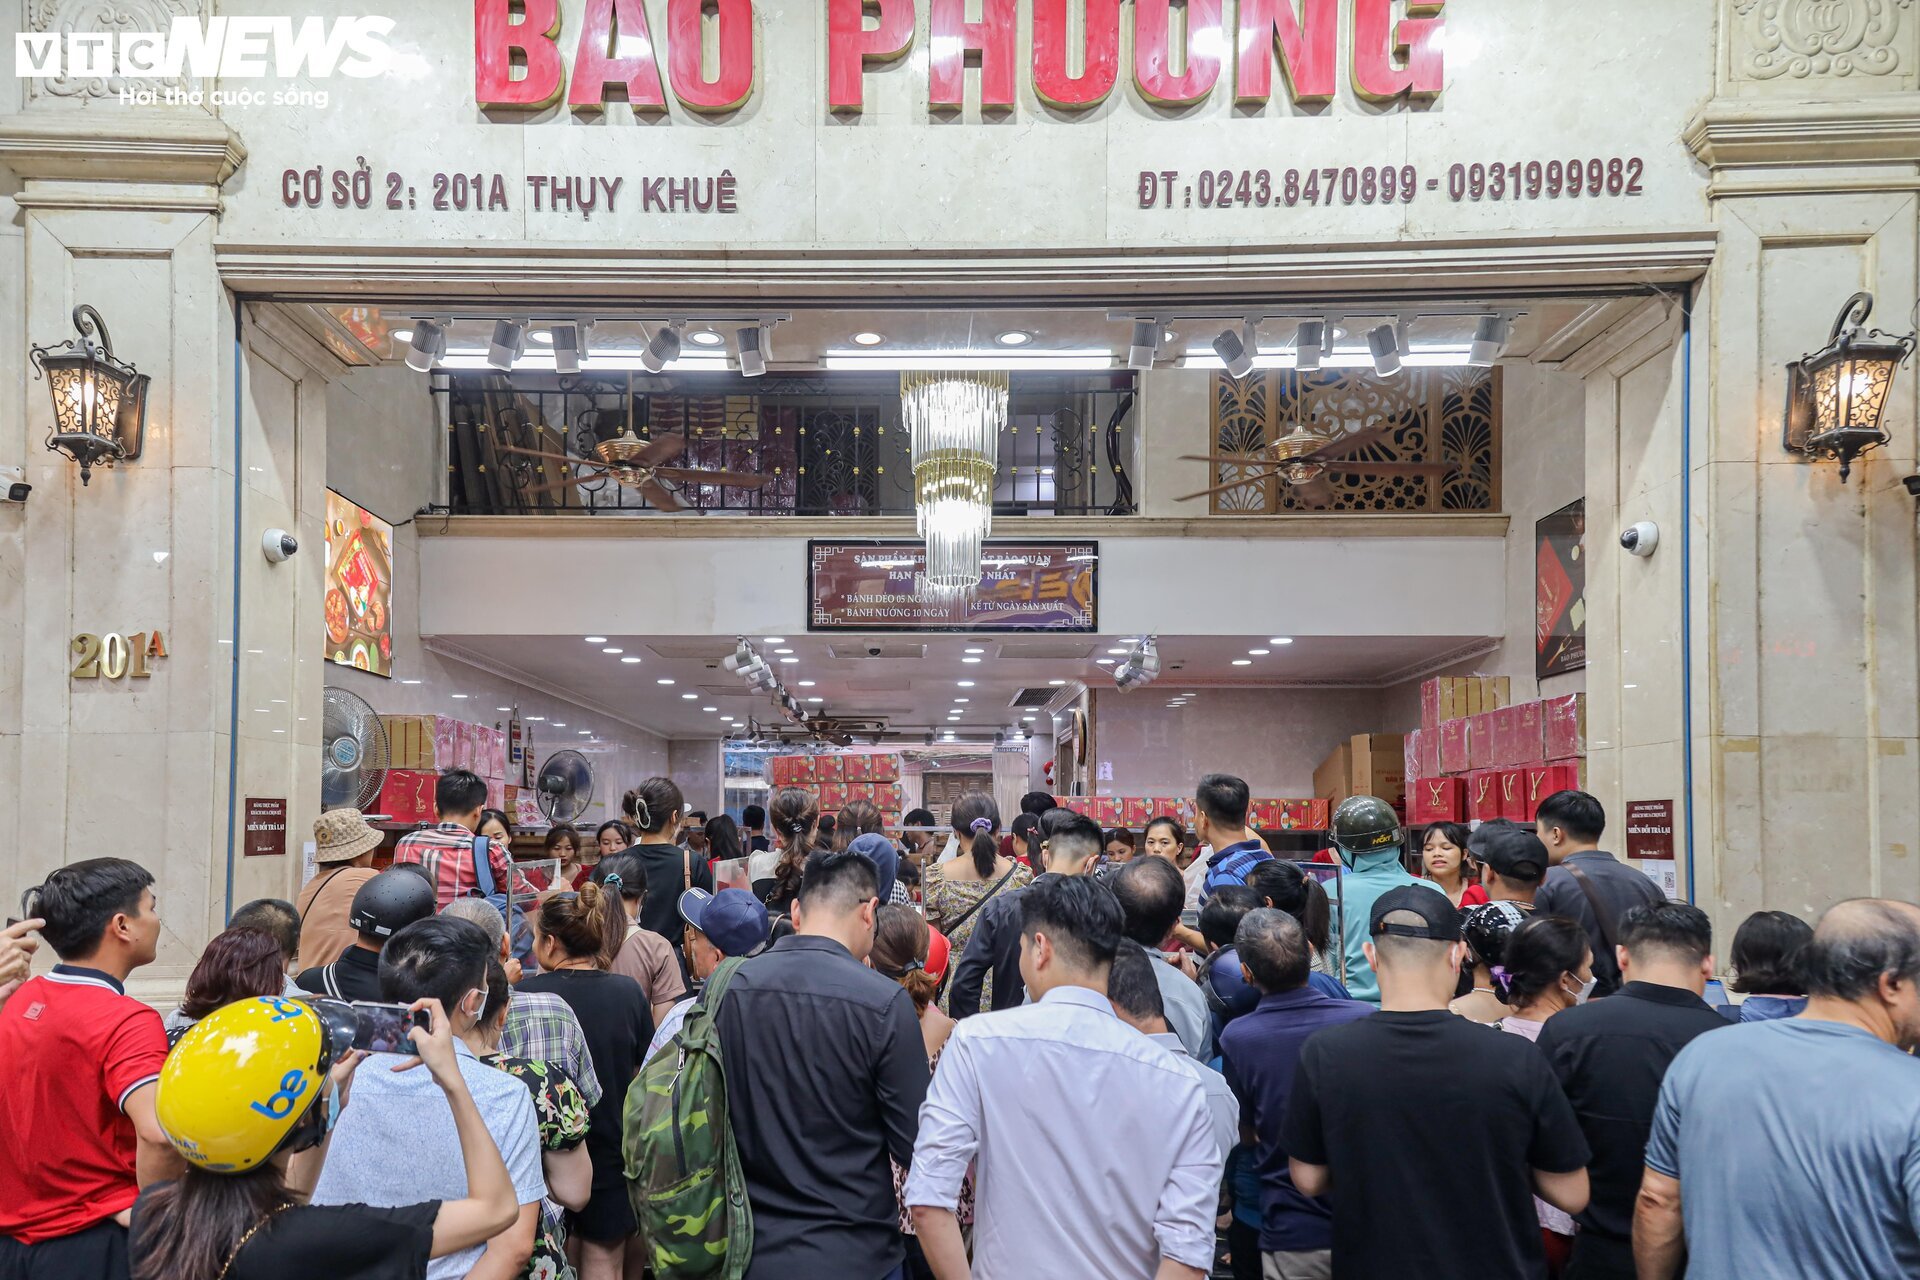 Hàng trăm người xếp hàng chờ mua bánh trung thu ở Hà Nội - Ảnh 14.